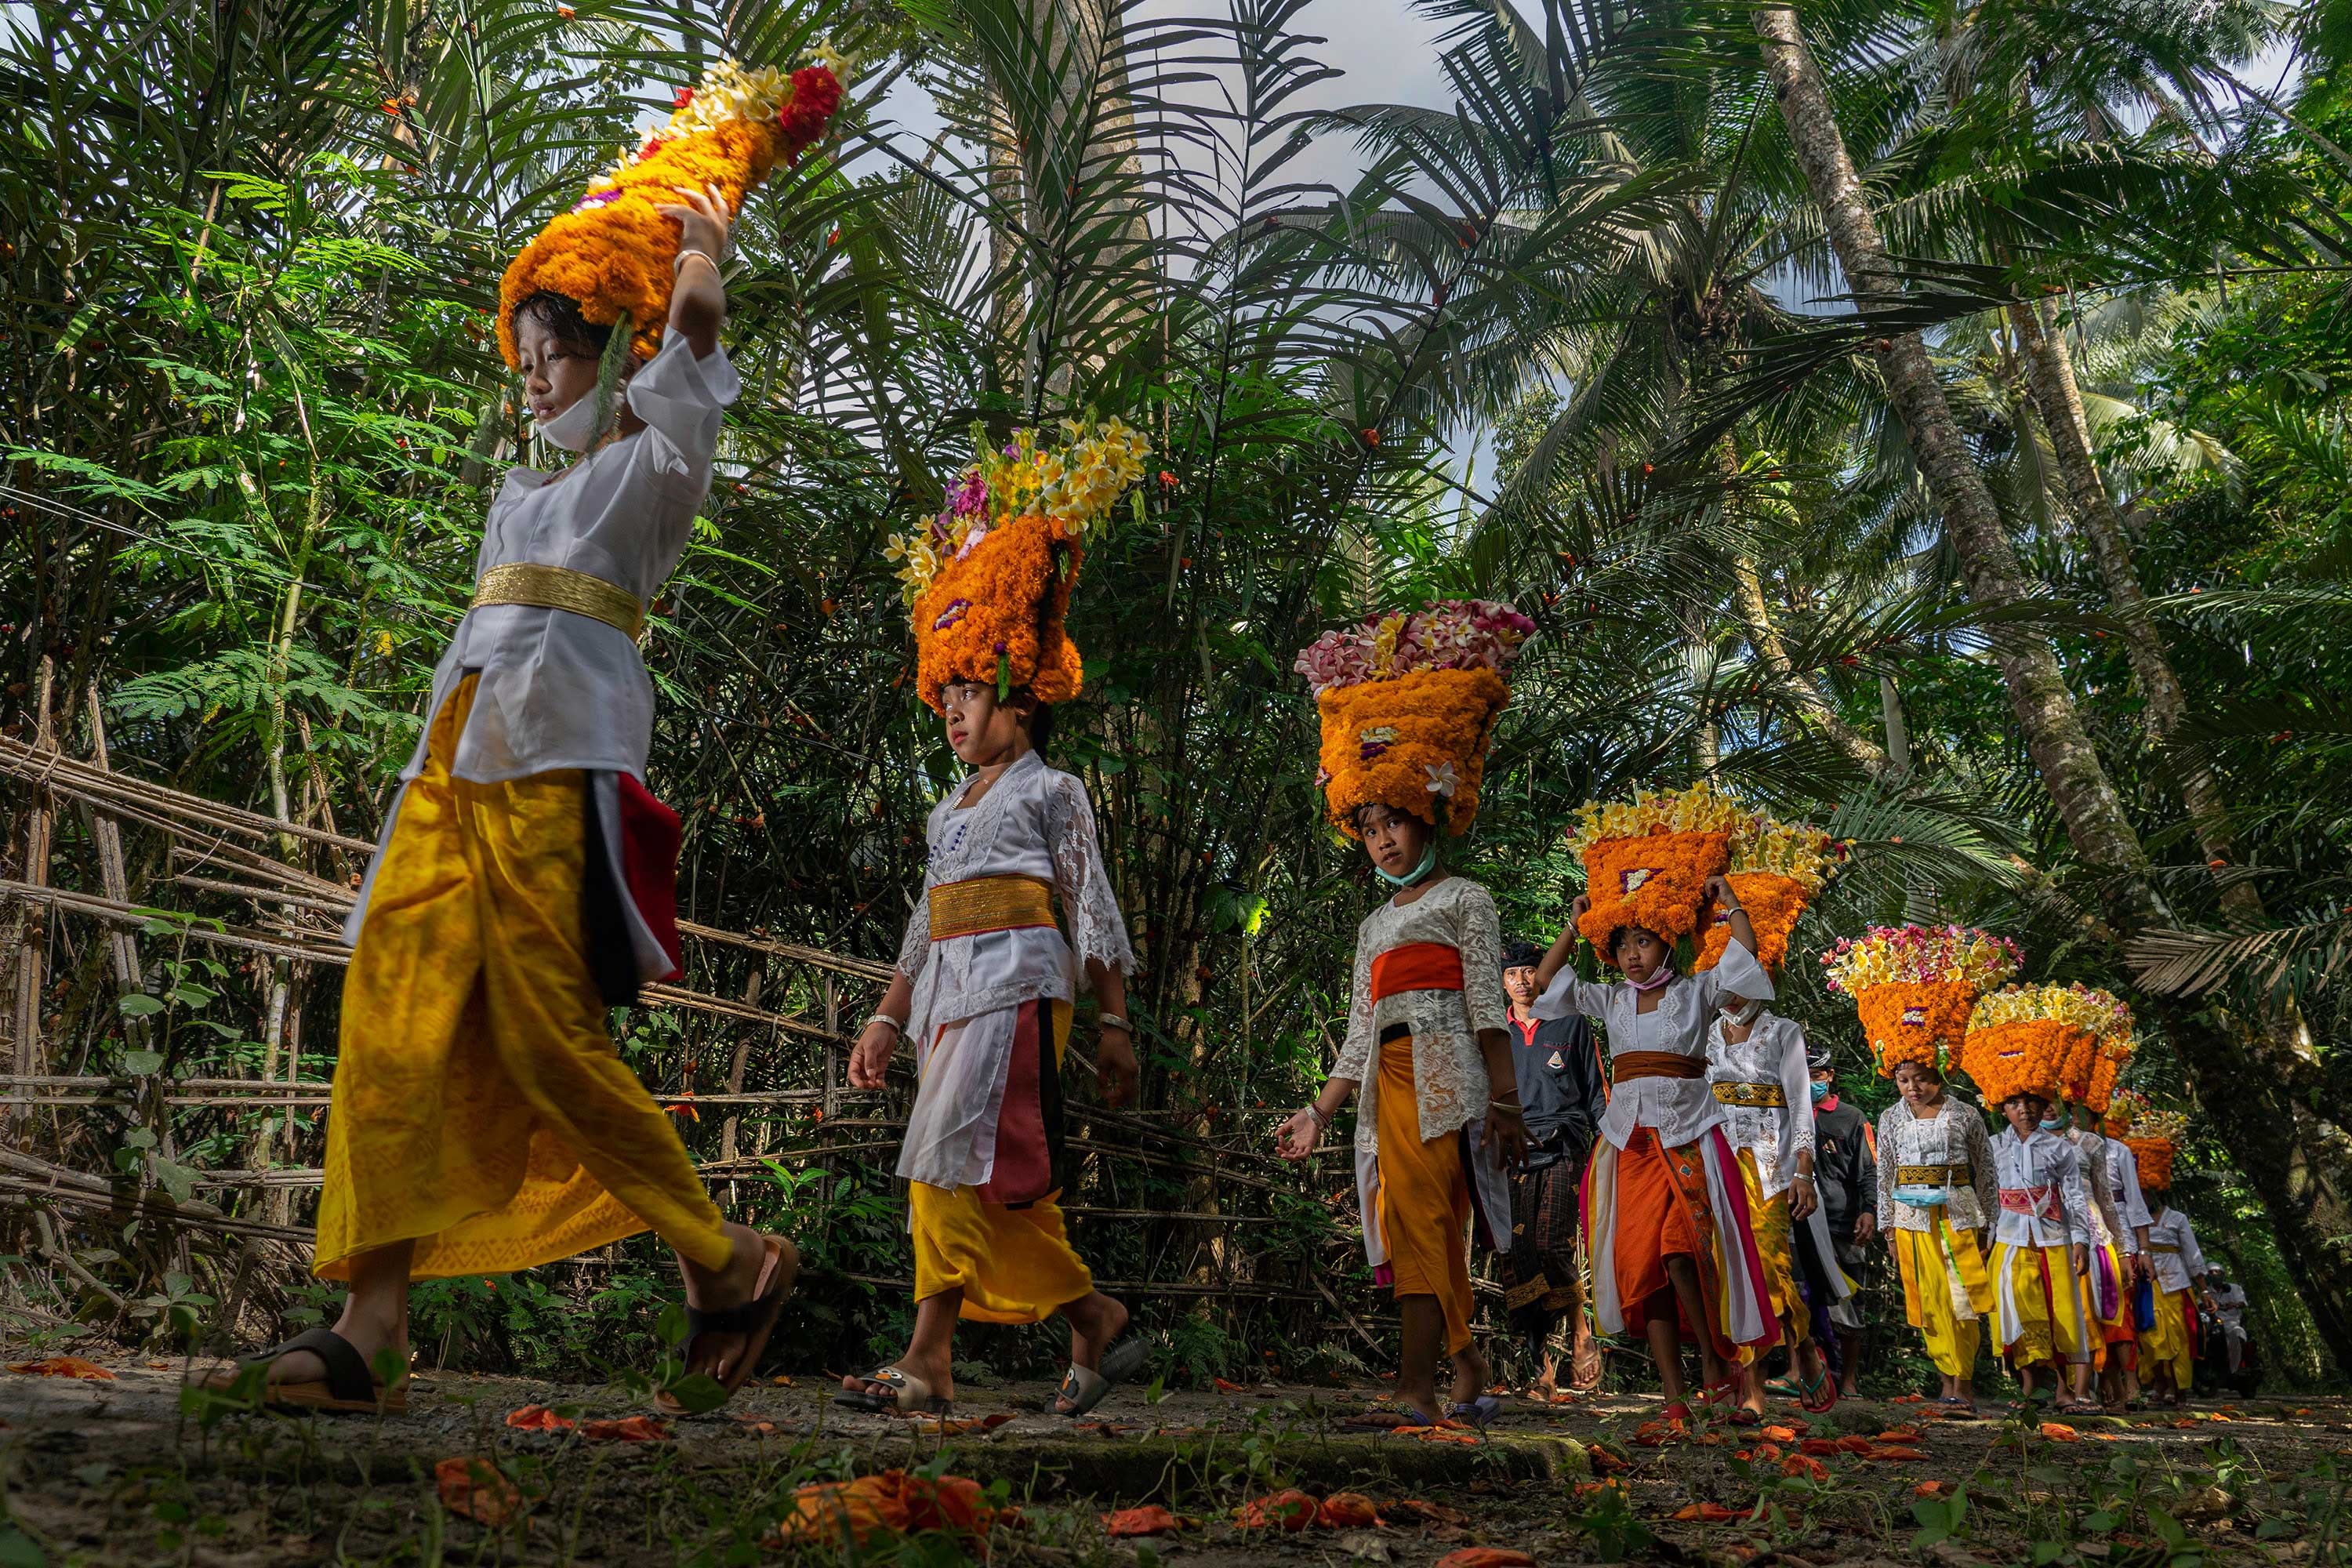 Anak - anak kecil berjalan menuju Pura guna menarikan tarian persembahan, yakni tari Rejang. Di desa Perangsari, Karangasem, Bali, para penari rejang mengenakan hiasan kepala yang menyerupai mahkota. Mahkota yang terbuat dari susunan bunga mitir.